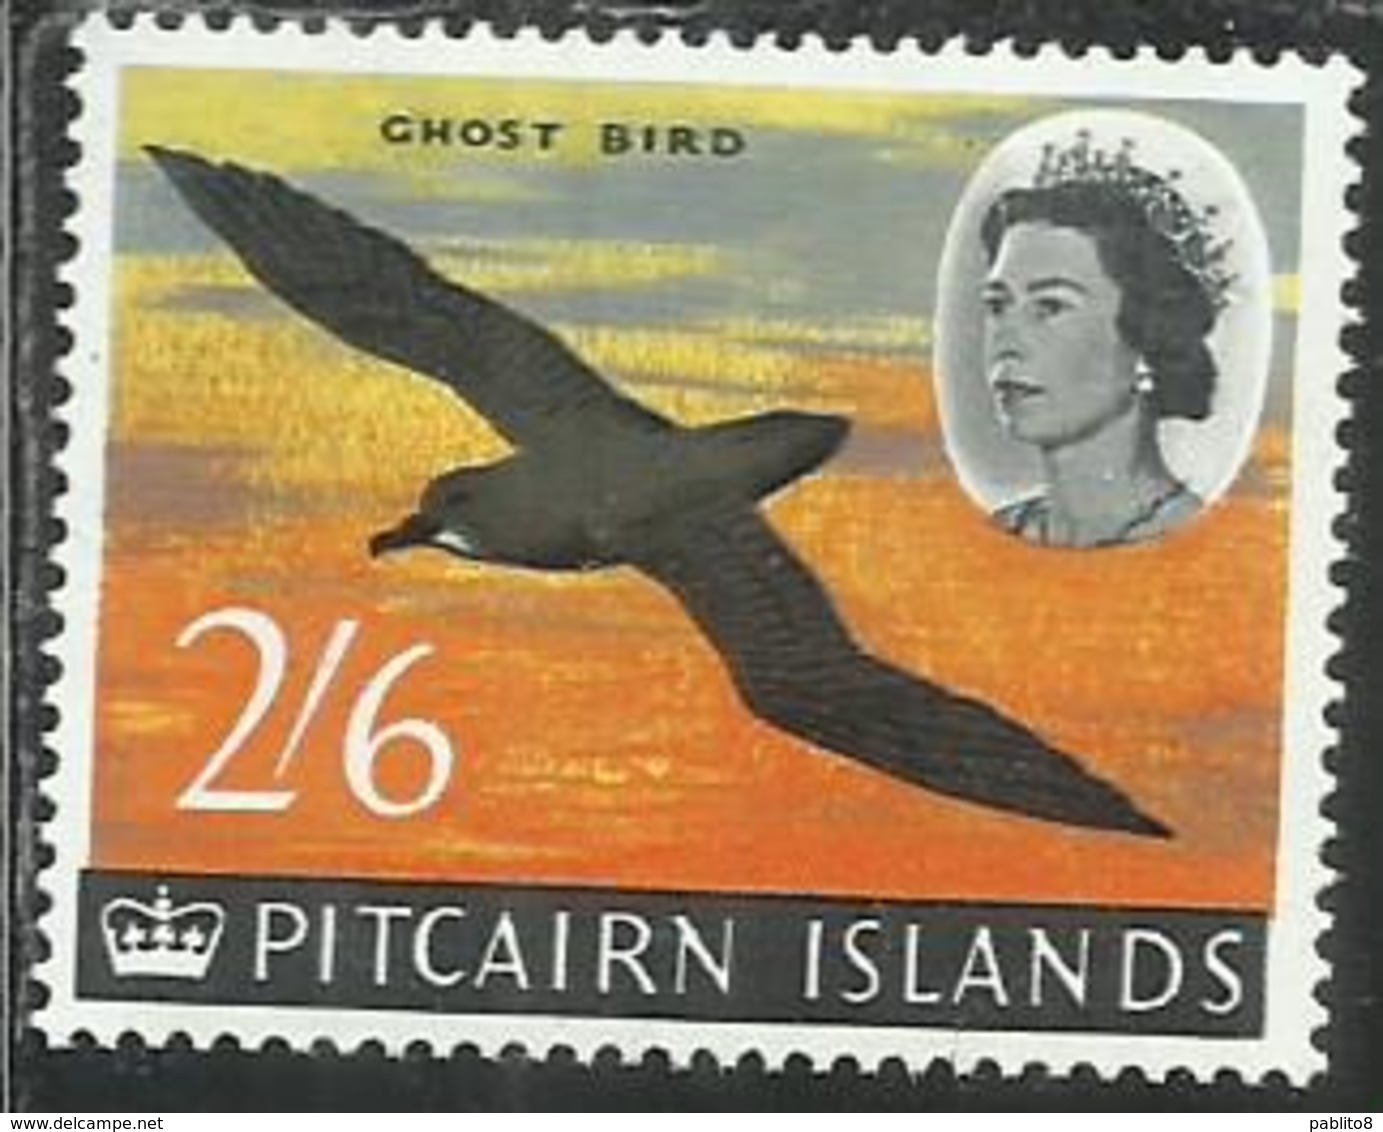 PITCAIRN ISLANDS ISOLE 1964 1965 DEFINITIVES MURPHY'S PETREL GHOST BIRD UCCELLO FAUNA 2sh 6p 2/6 MNH - Pitcairn